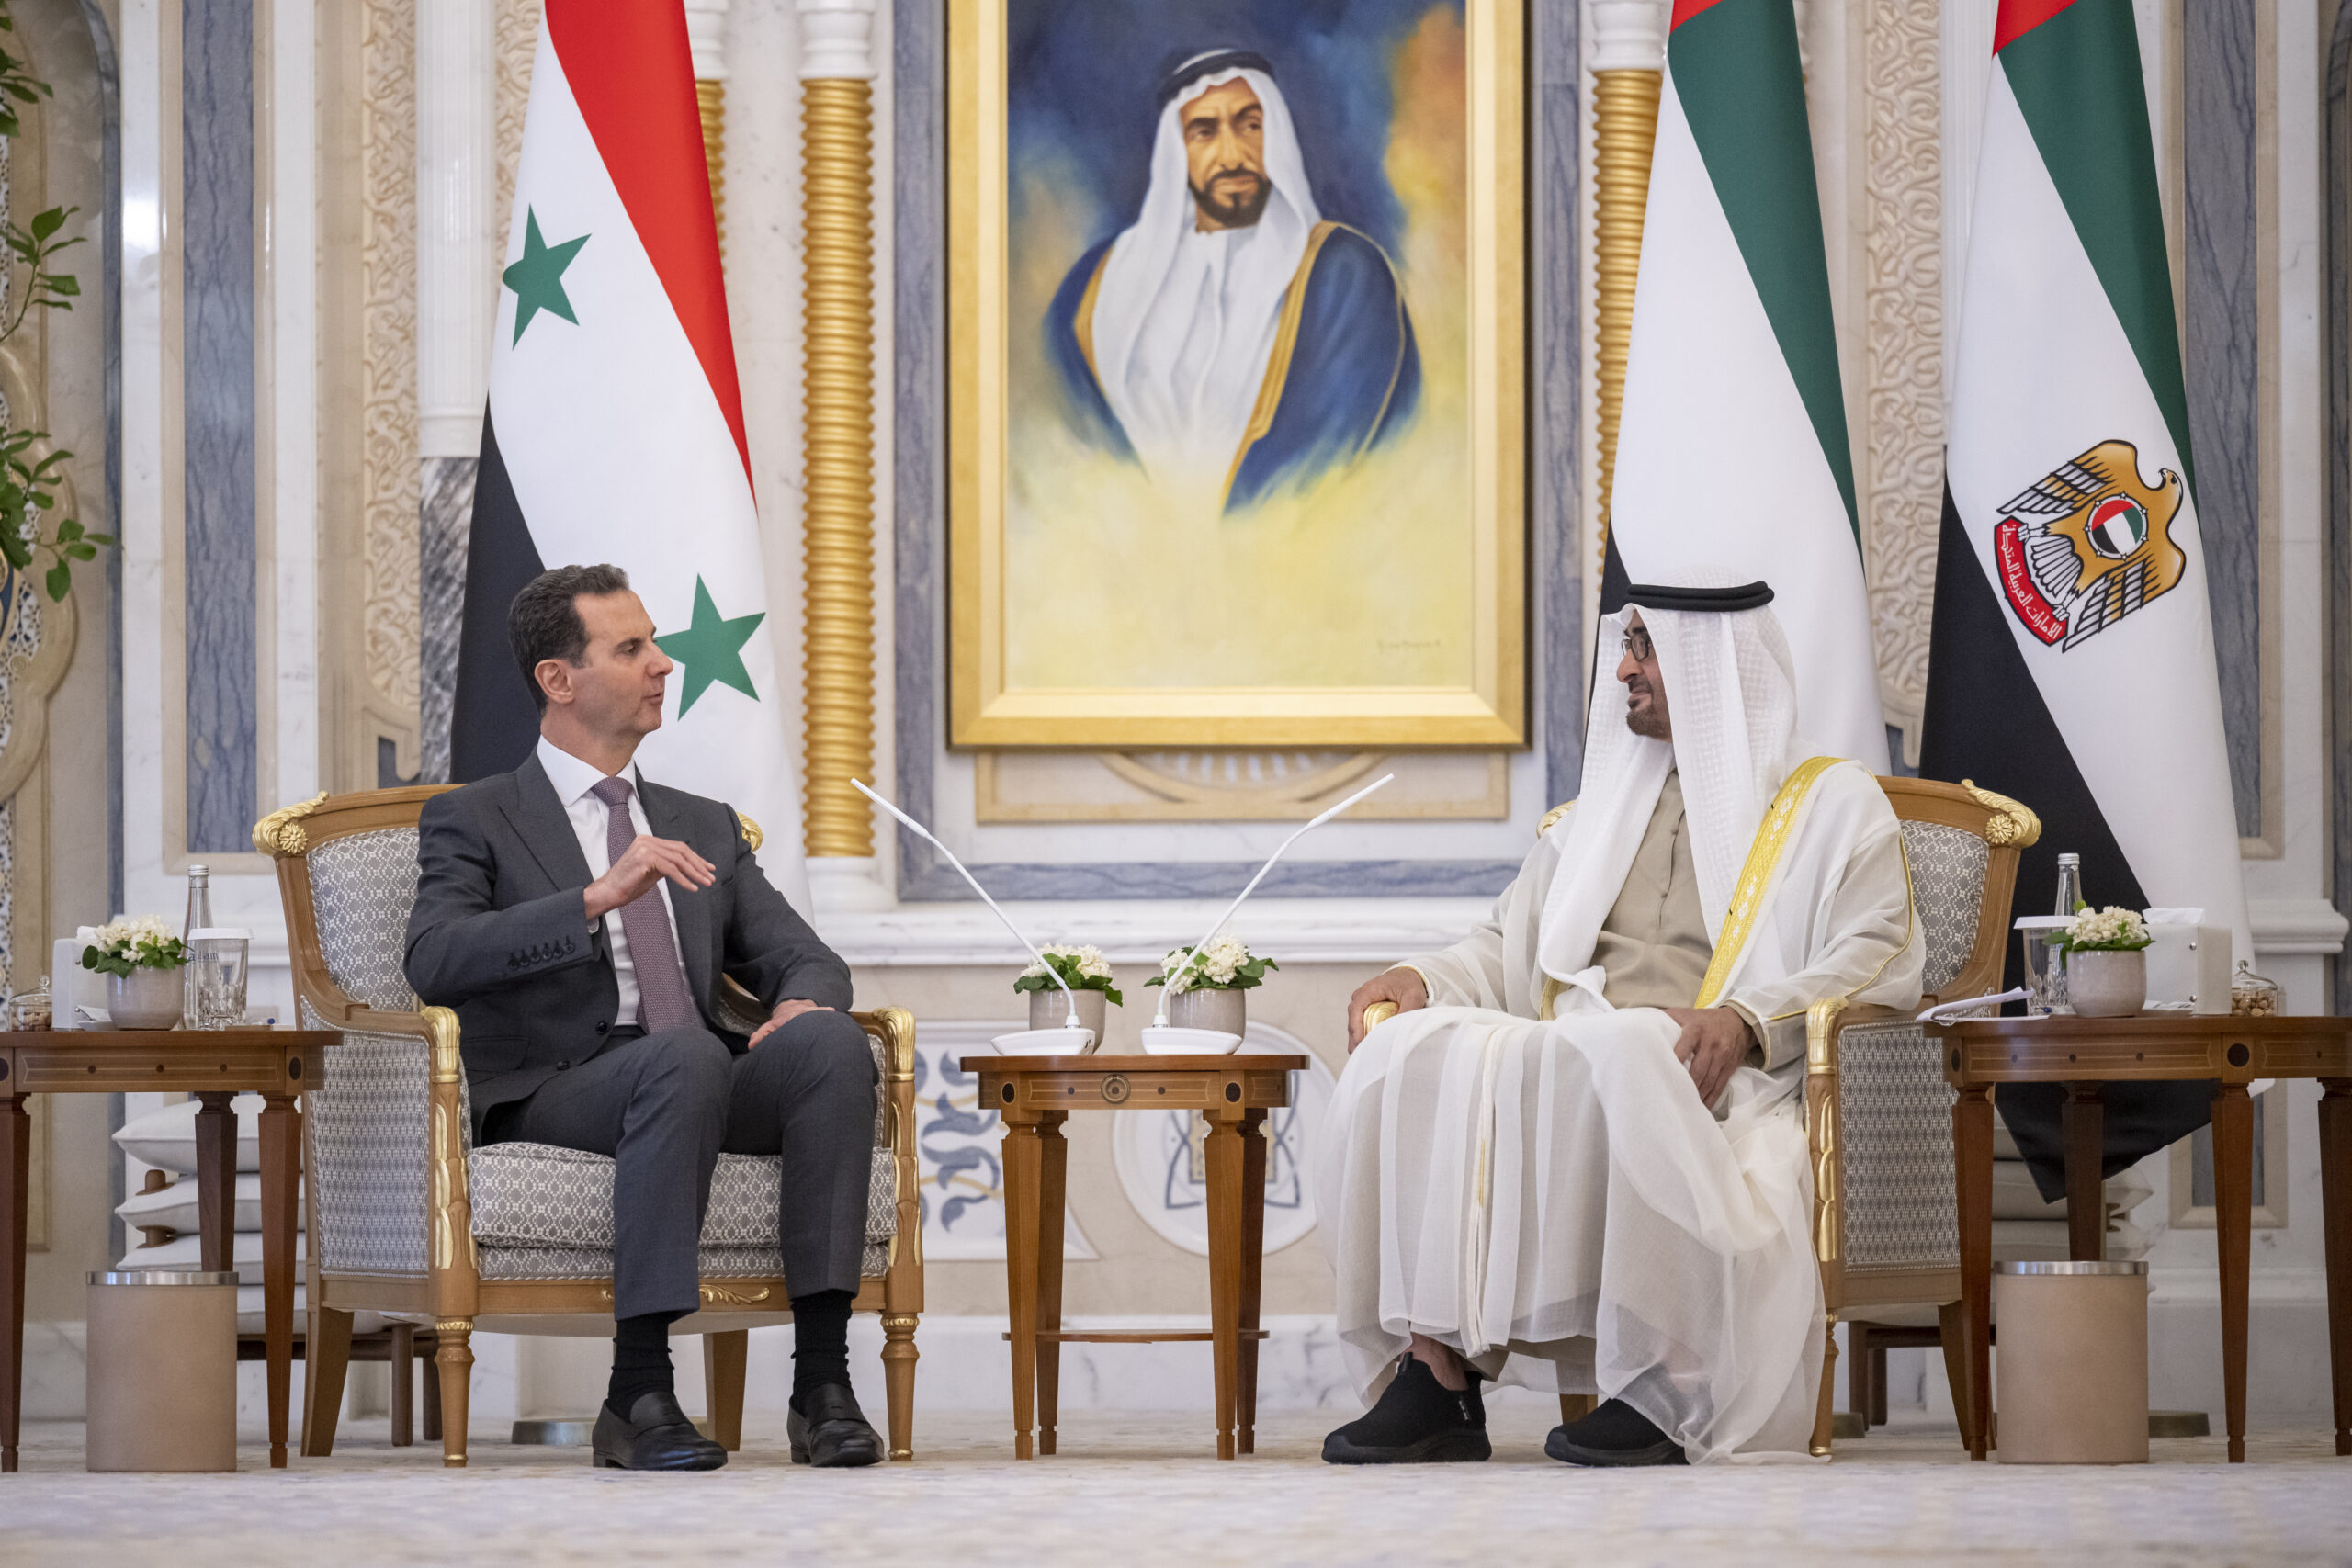 Syrian President Bashar Al Assad visits Abu Dhabi